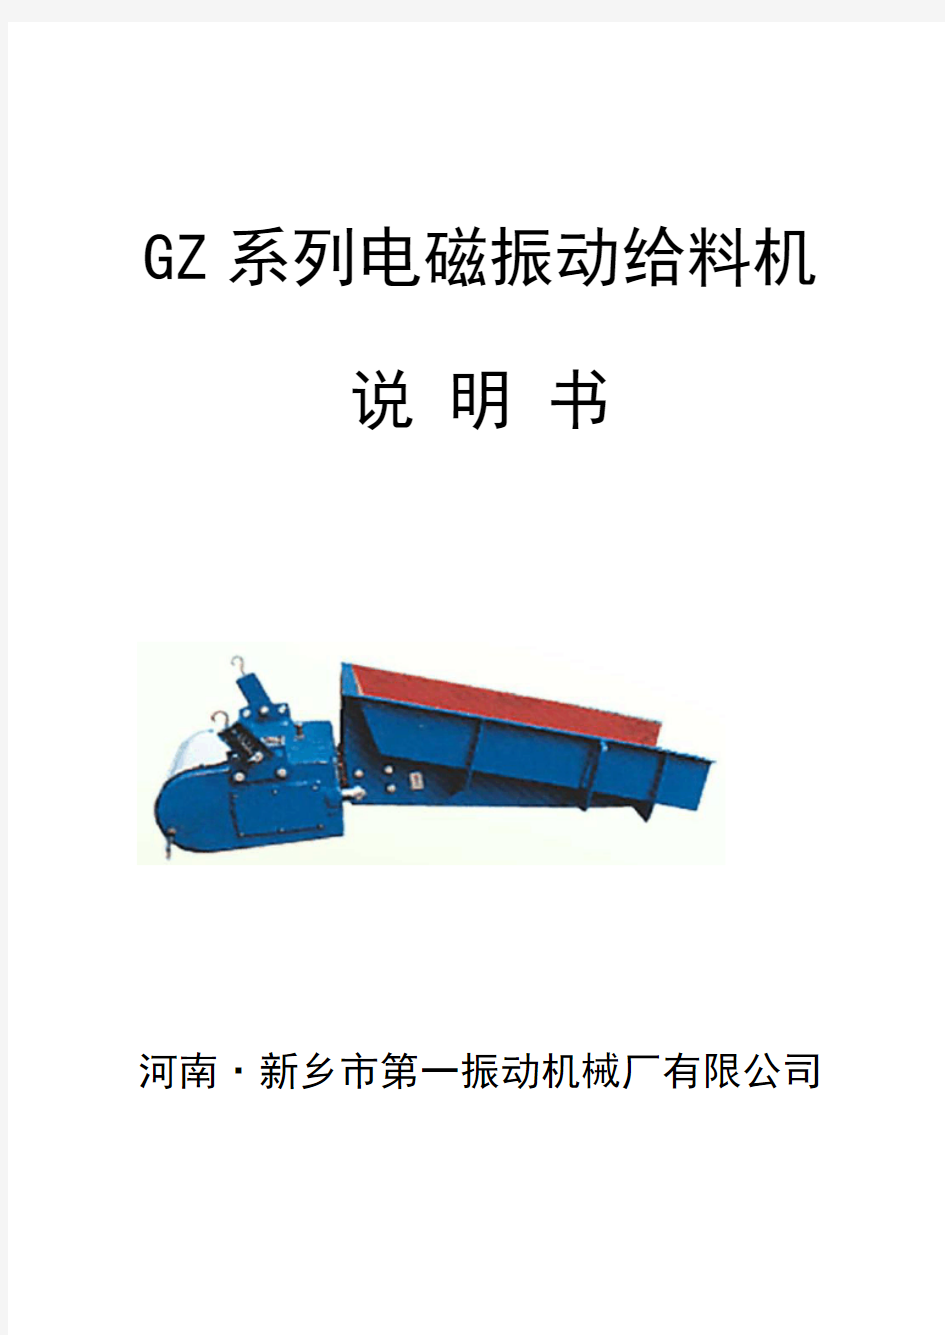 GZ系列电磁振动给料机说明书